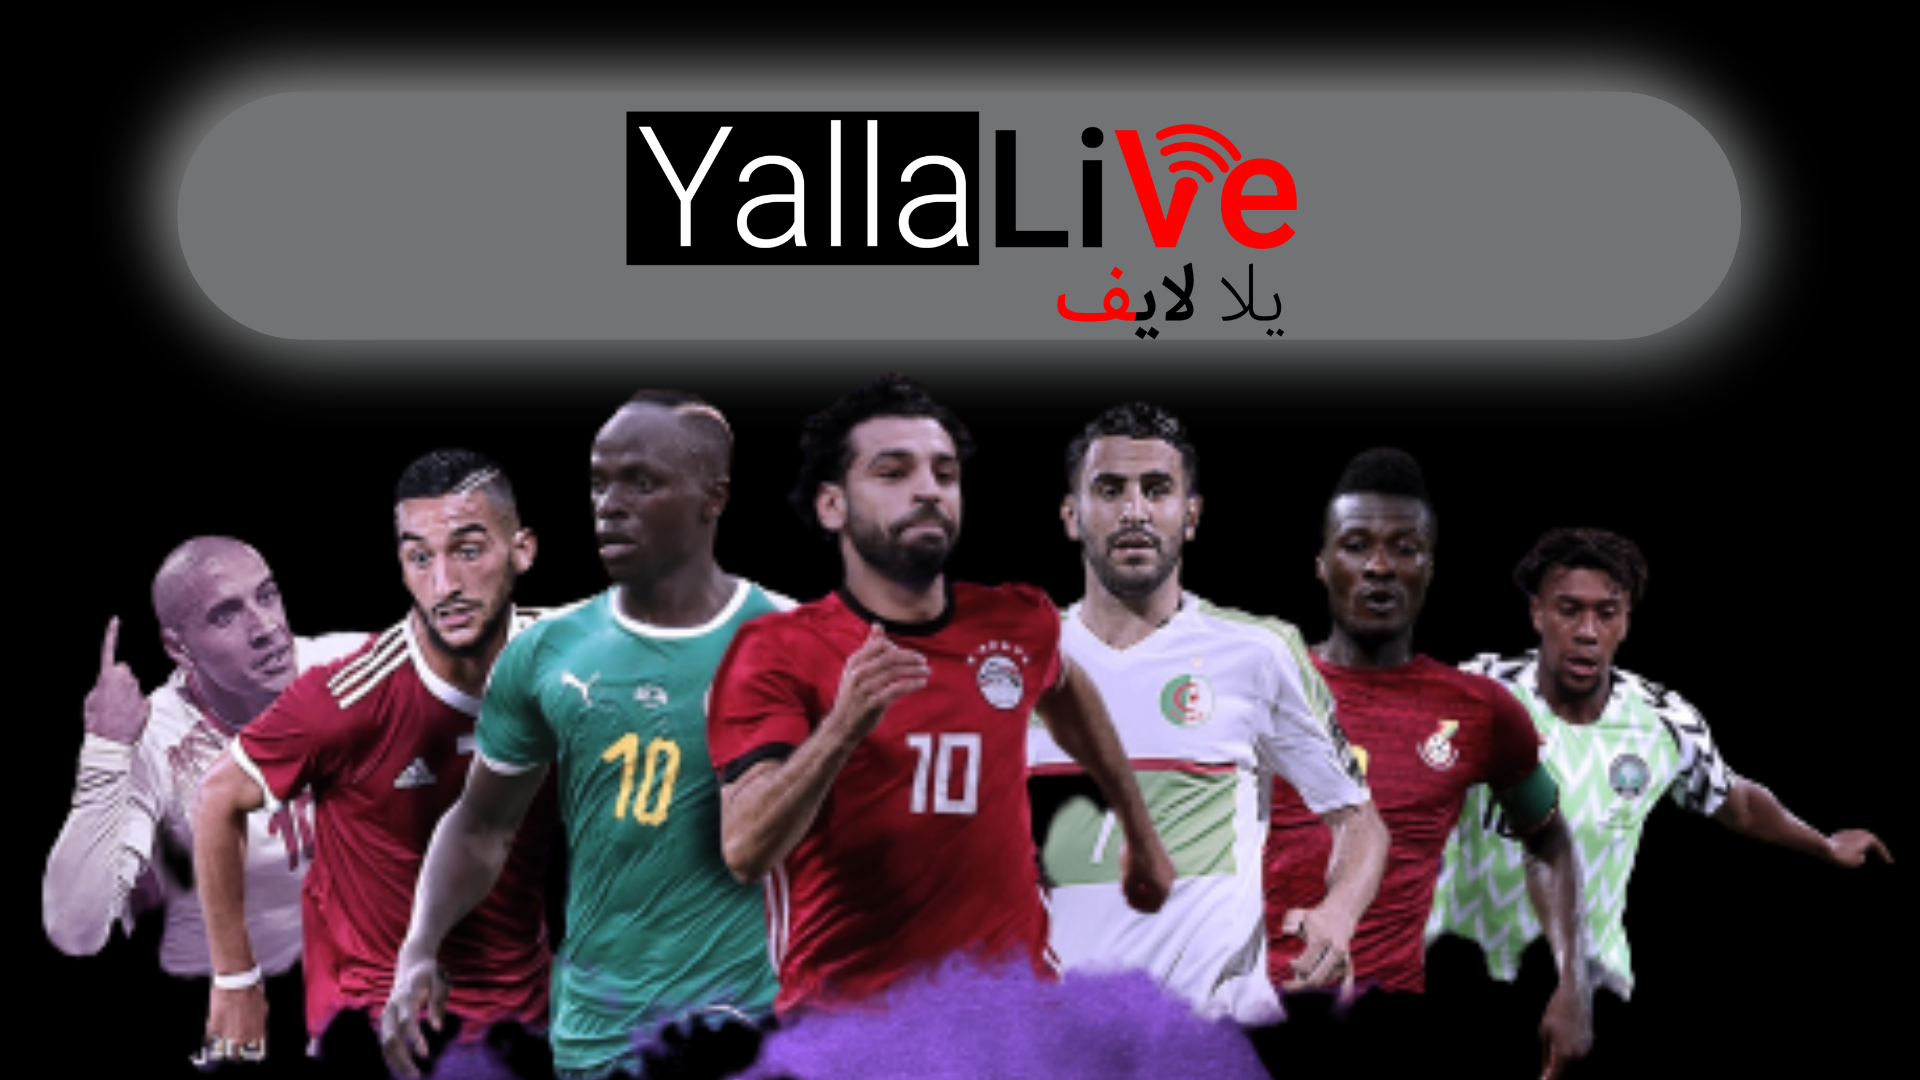 يلا لايف yalla live tv بث مباشر مباريات اليوم بدون تقطيع